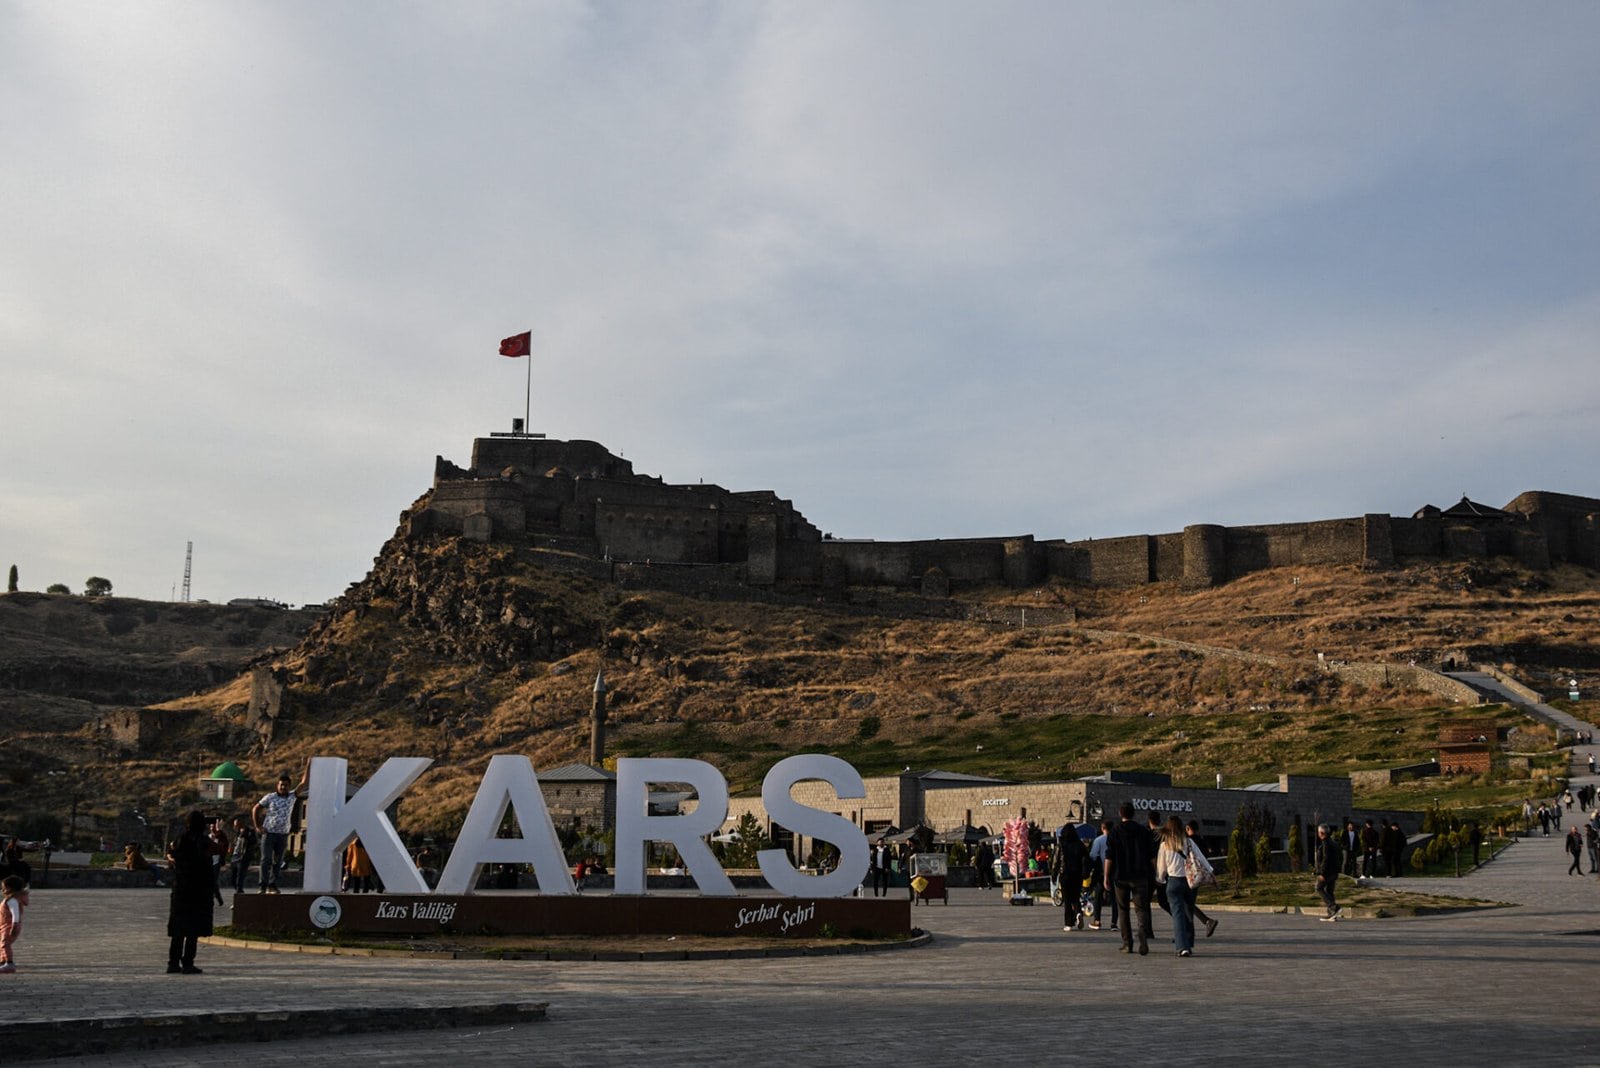 a "Kars" city sign at the bottom of an imposing citadel